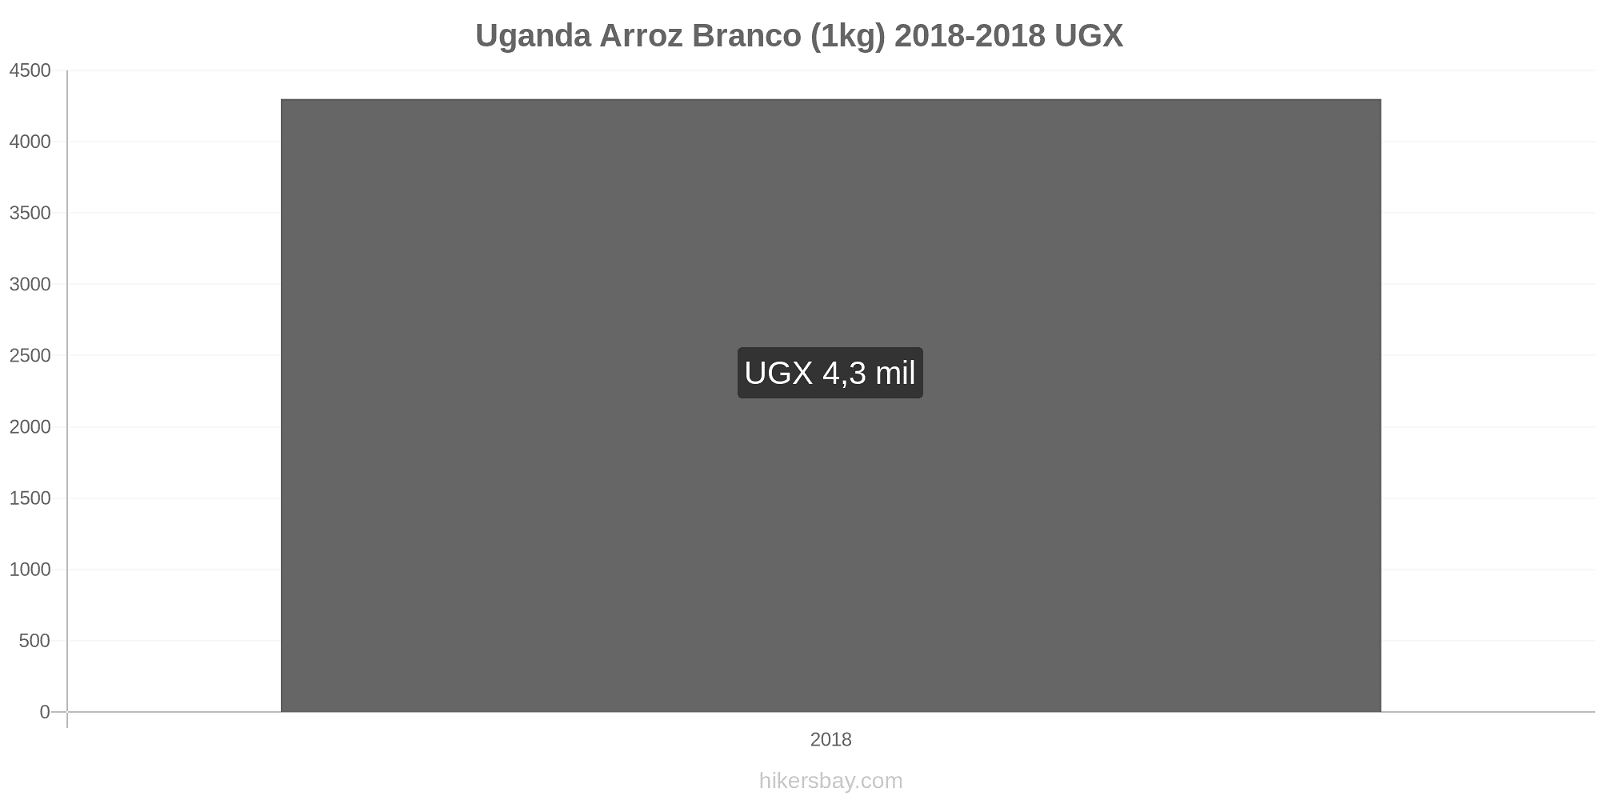 Uganda mudanças de preços Quilo de arroz branco hikersbay.com